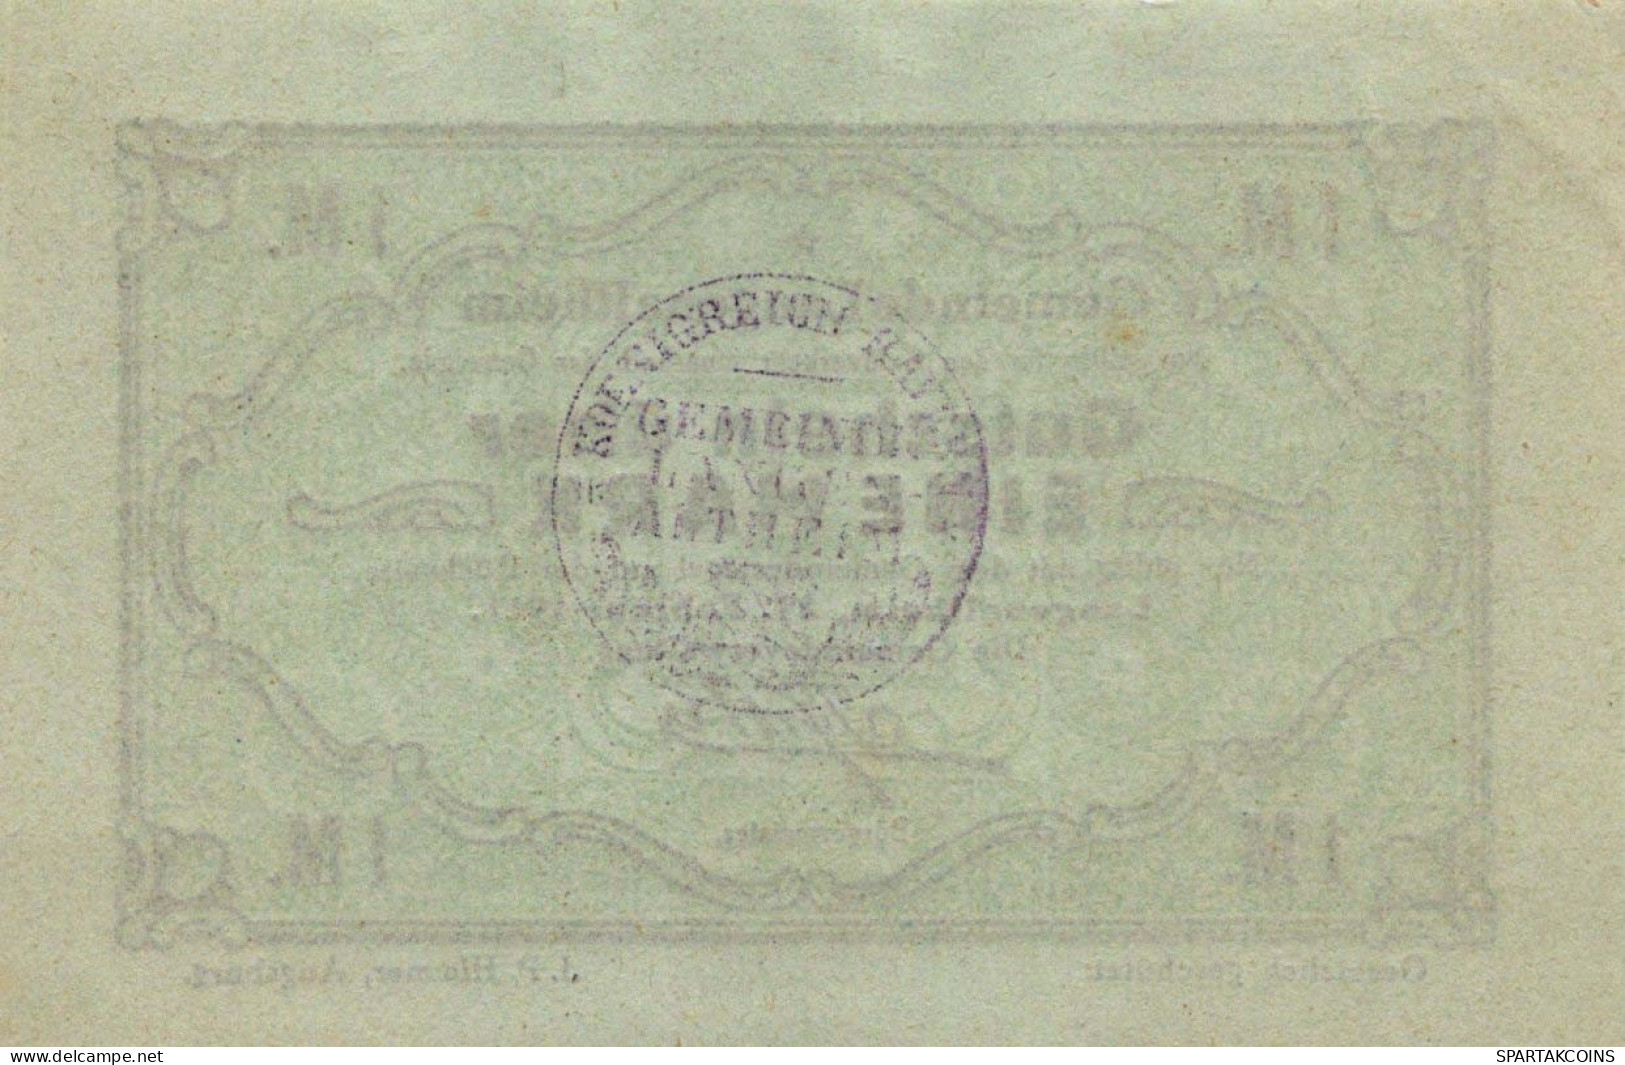 1 MARK 1917 Stadt LANGENALTHEIM Bavaria UNC DEUTSCHLAND Notgeld Banknote #PB965 - [11] Emissioni Locali